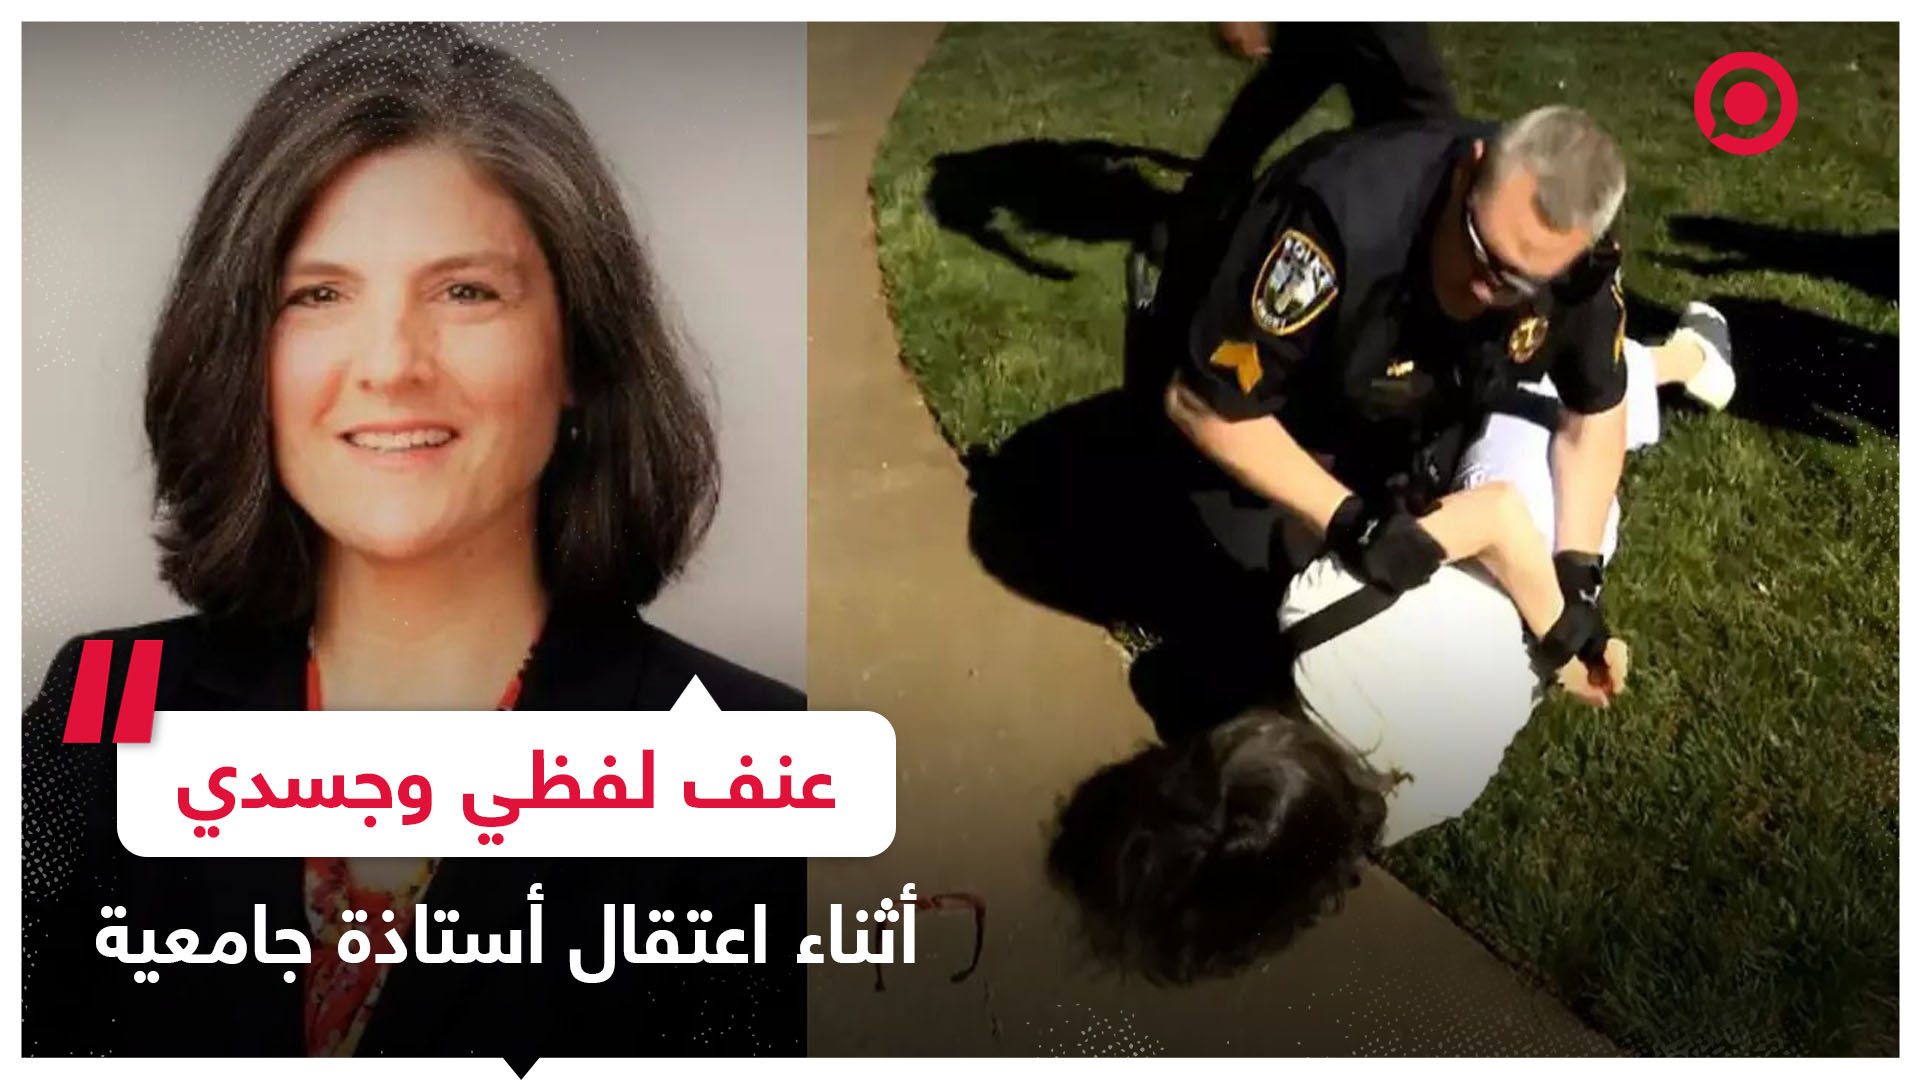 عنف لفظي وجسدي .. الشرطة الأمريكية تعتقل بعنف أستاذة بجامعة أمريكية خلال احتجاجات داعمة لغزة